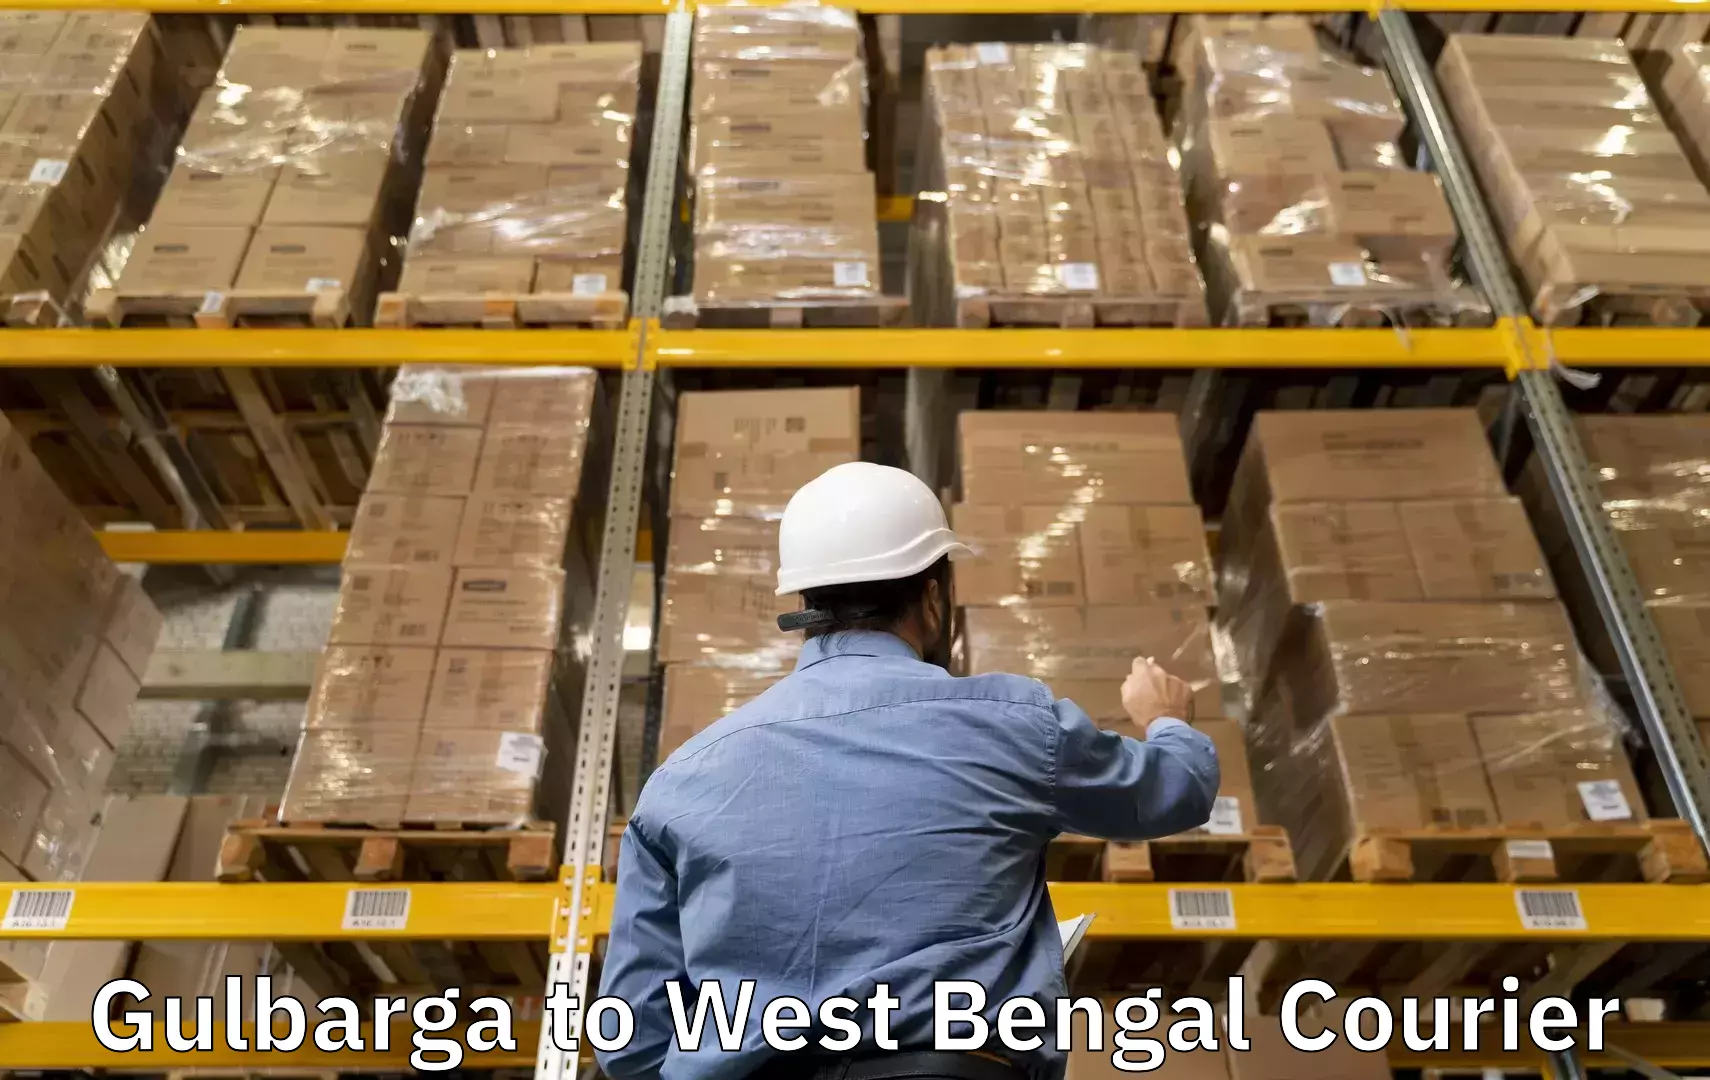 Luggage forwarding service Gulbarga to West Bengal